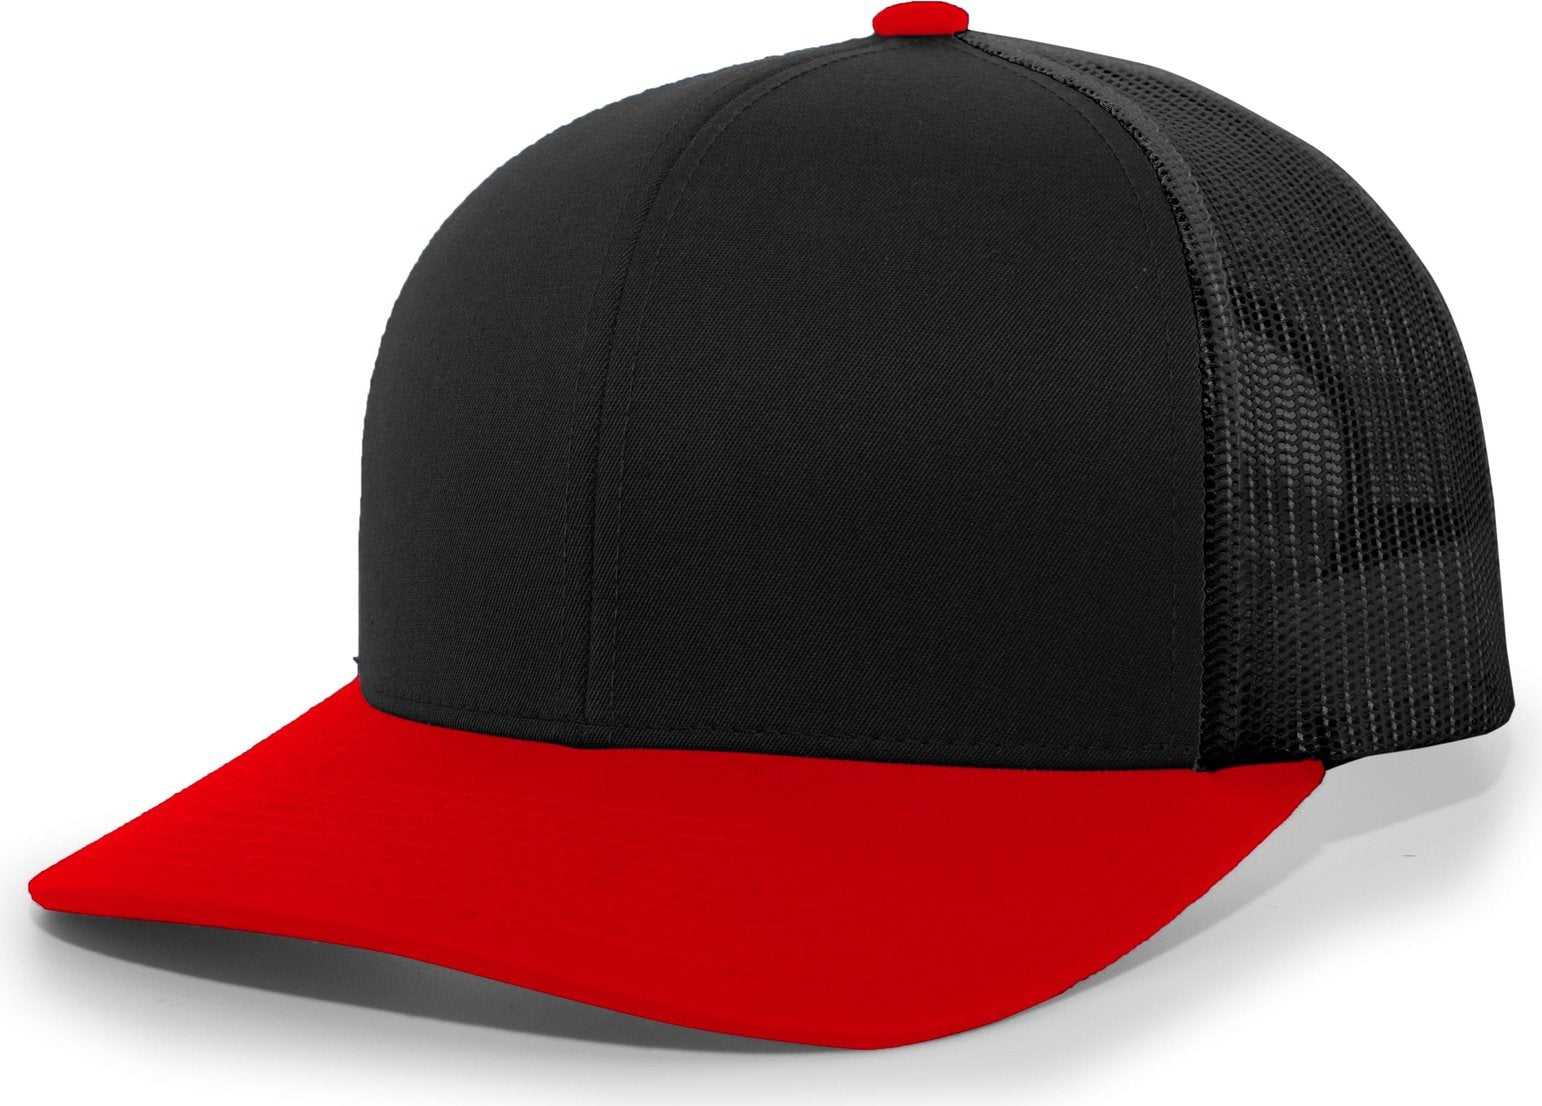 Pacific Headwear 104C Trucker Snapback Cap - Black Red - HIT a Double